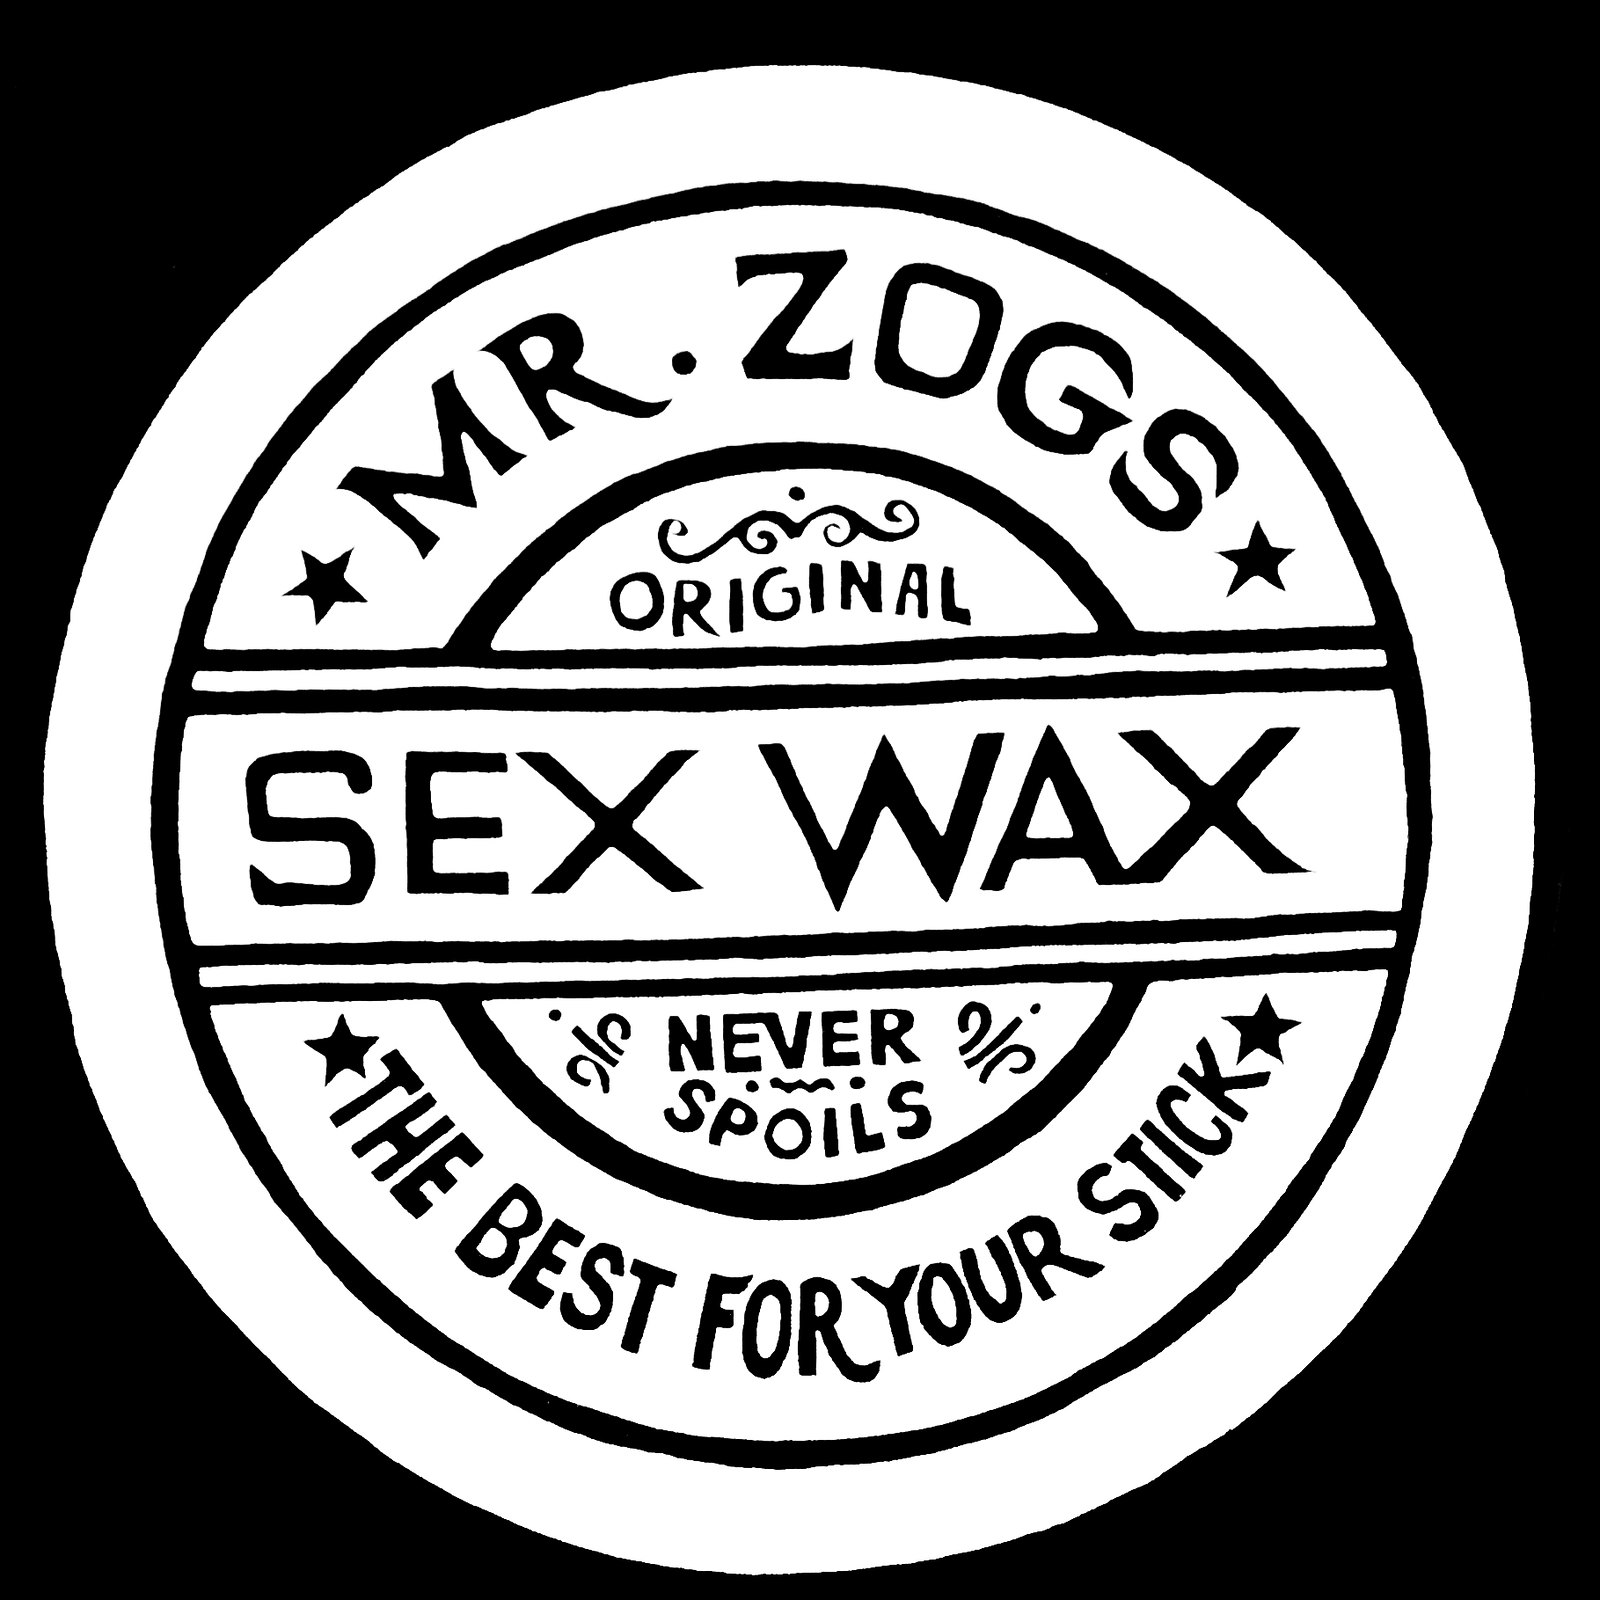 Mr Zogs Sex Wax 10